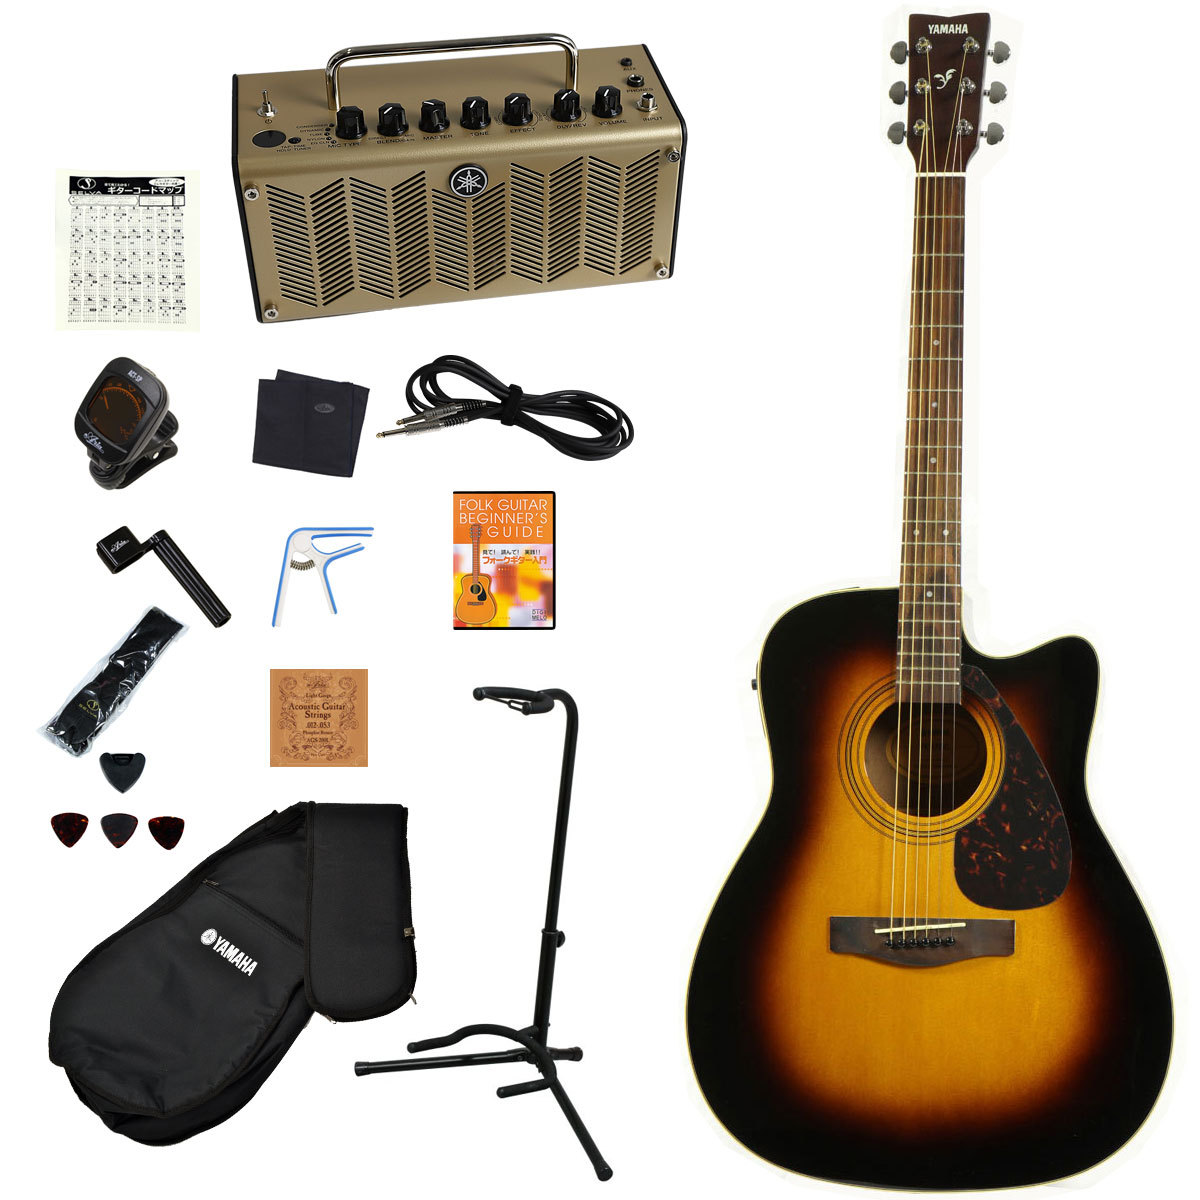 ヤマハ FX-170 アコースティックギター ナチュラル